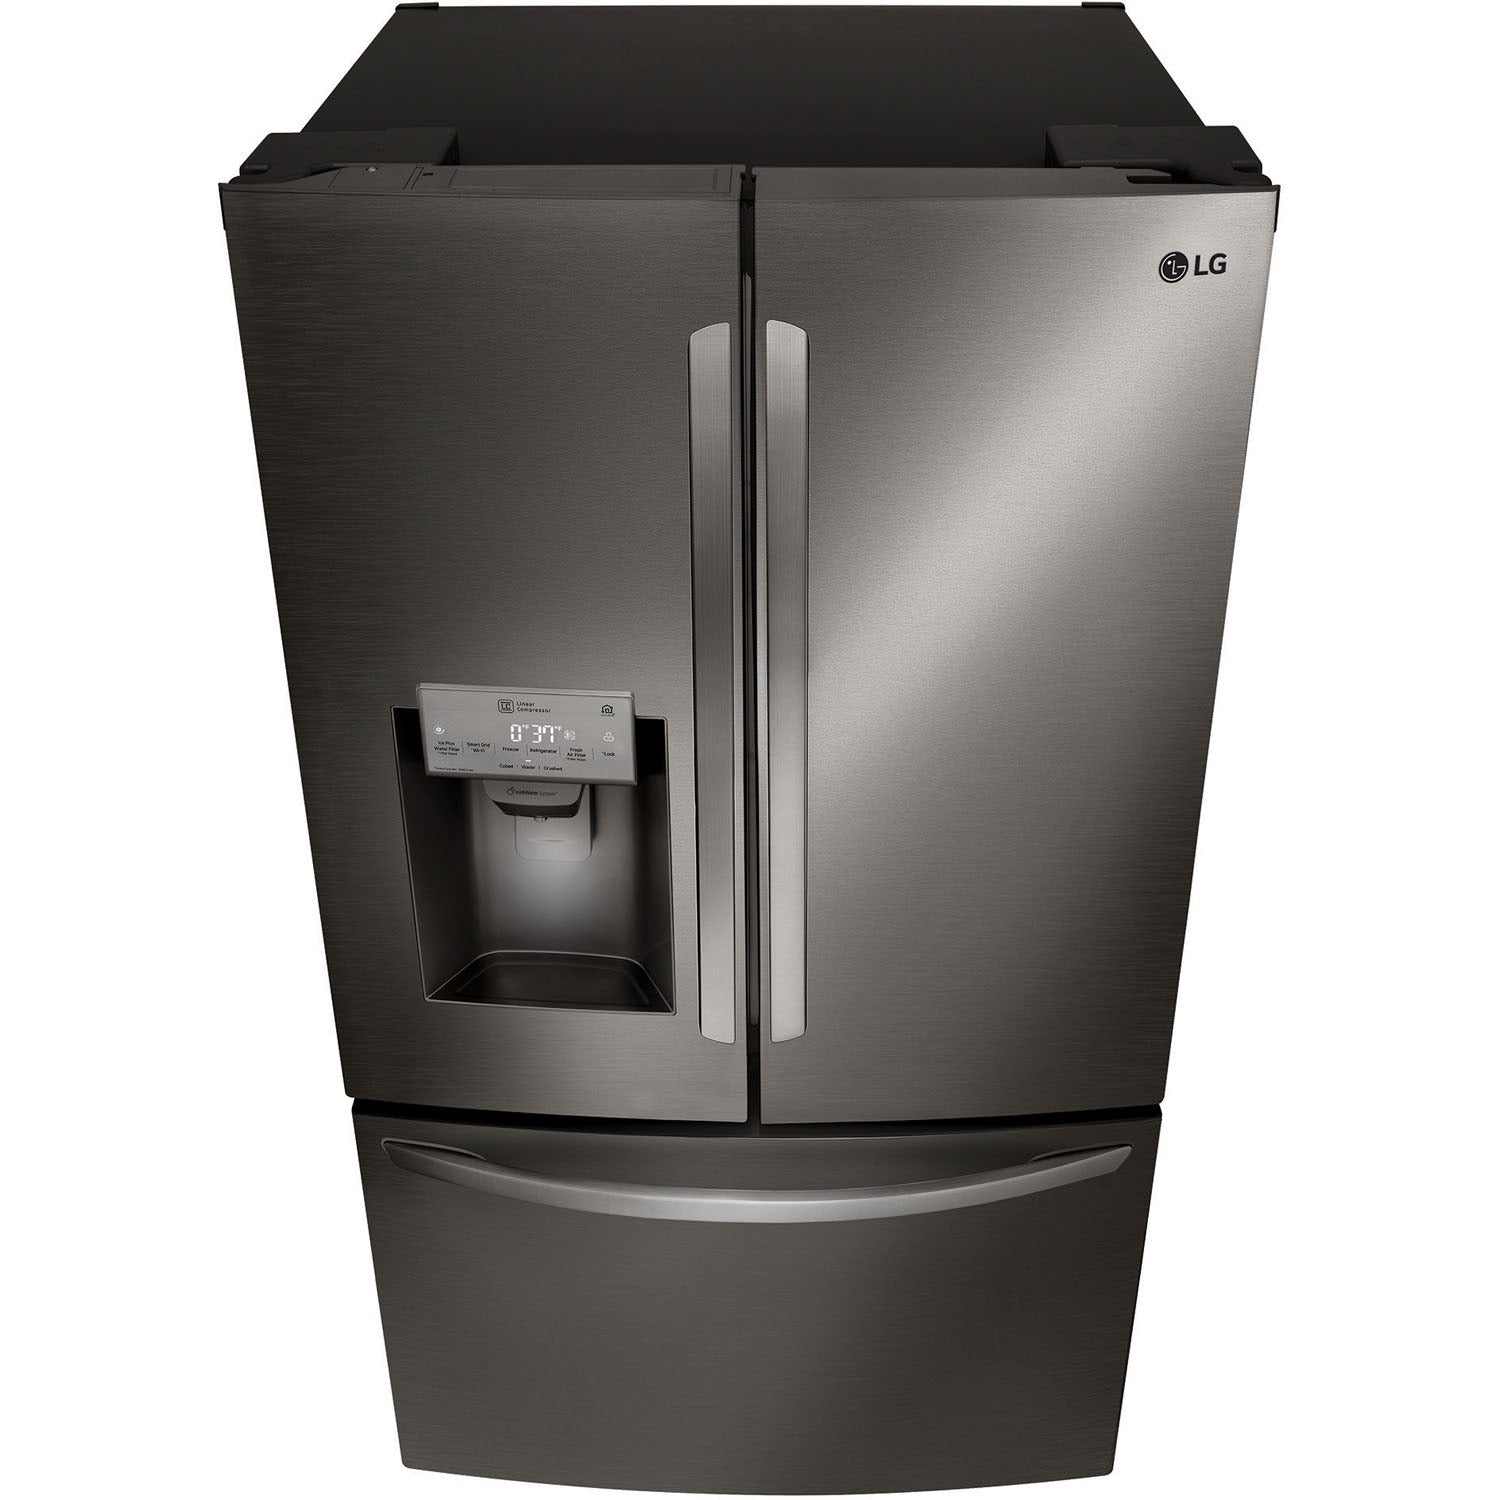 LG 36 Inch 3-Door French Door Refrigerator in Black Stainless Steel 22 Cu. Ft. (LFXC22526D)